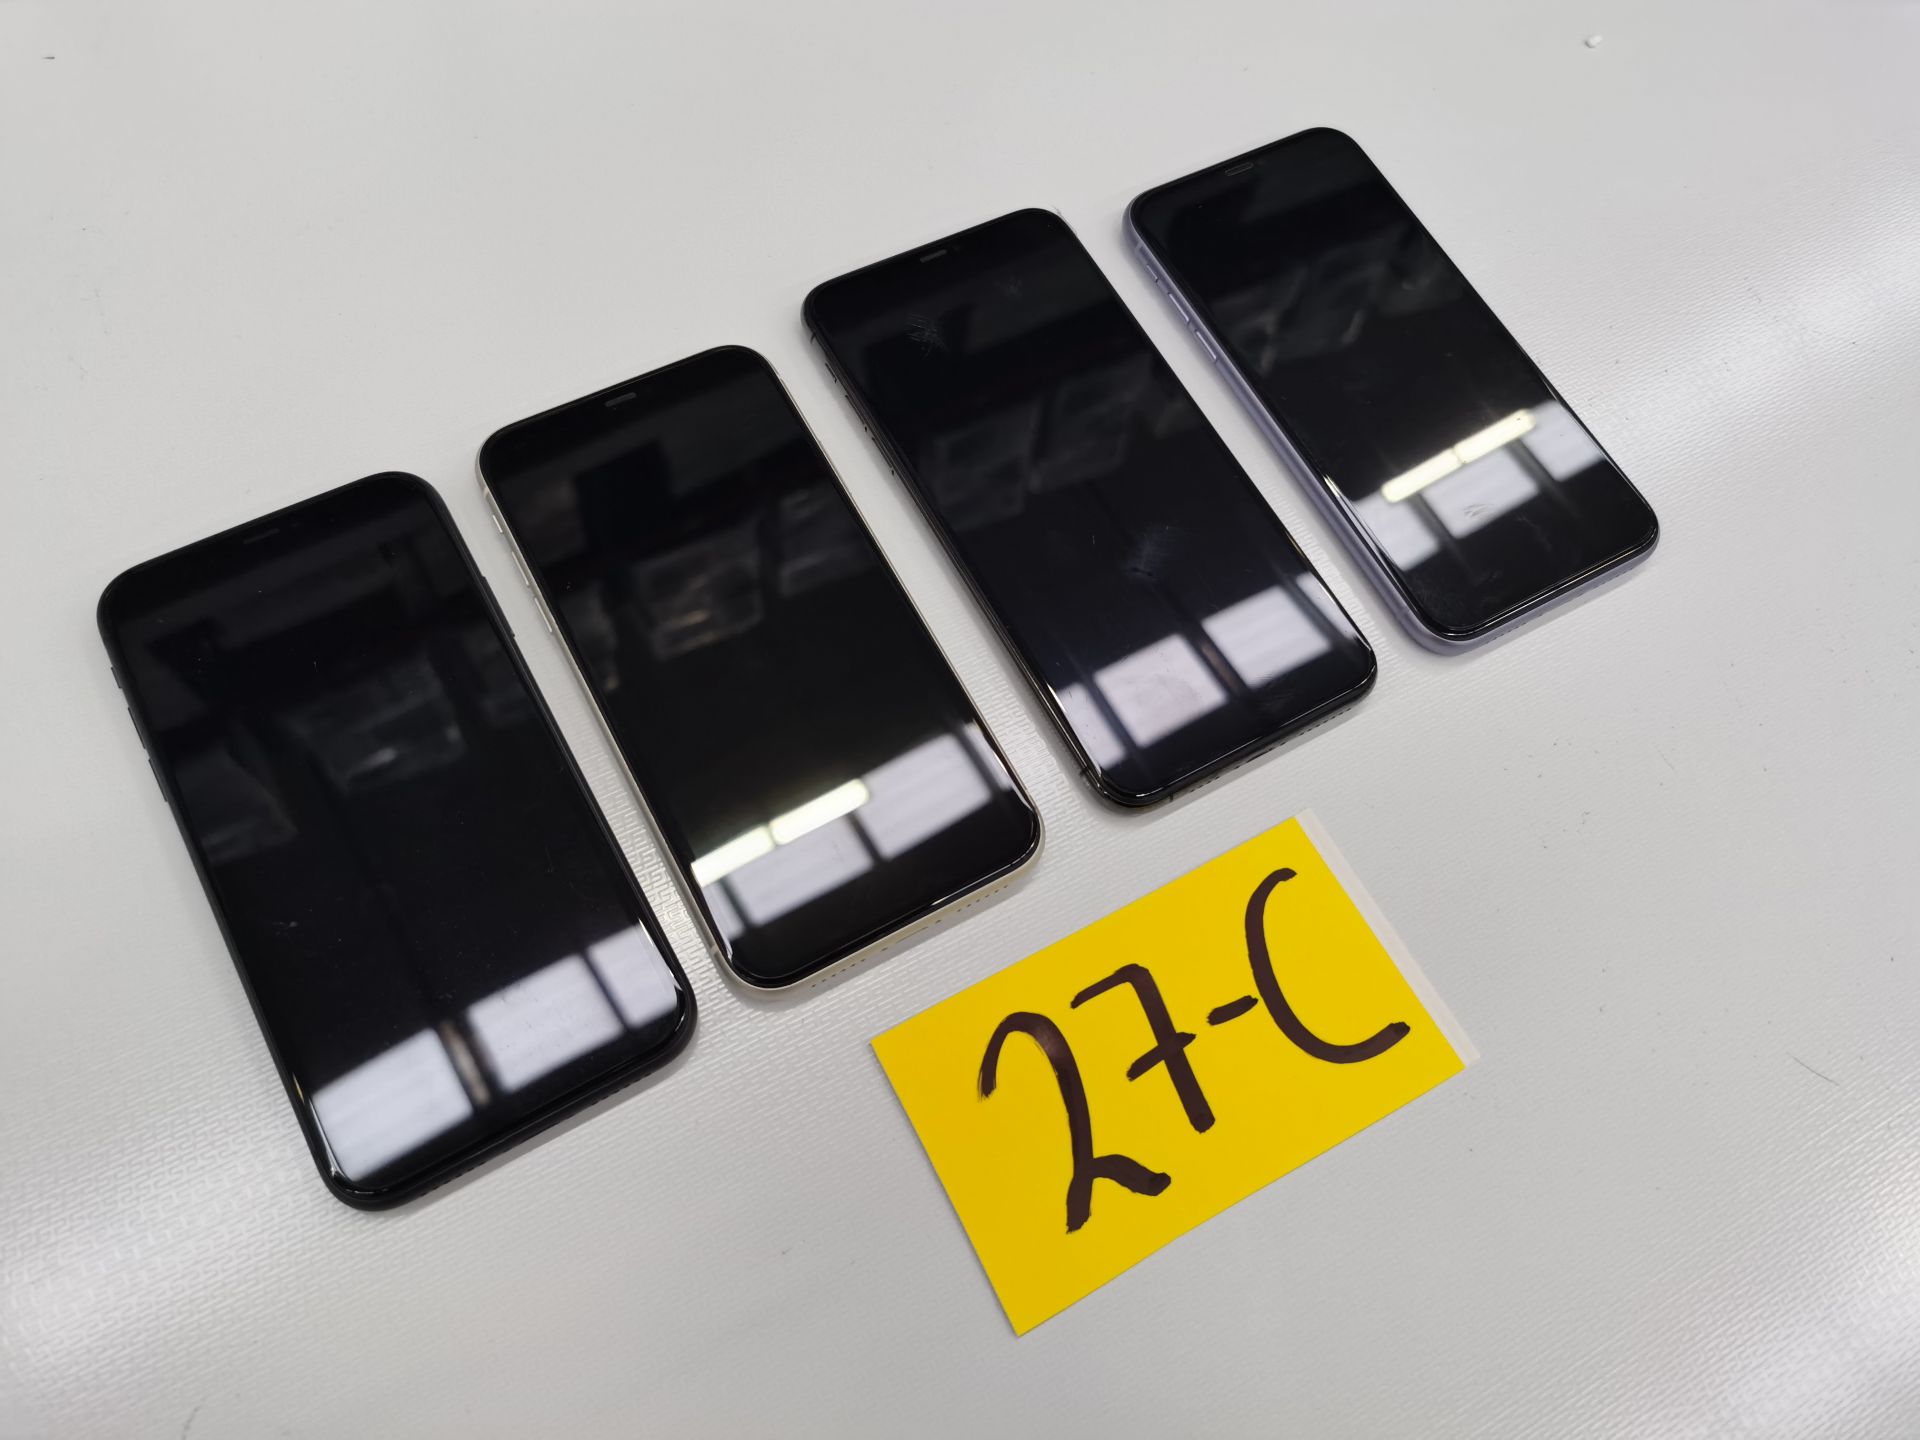 Lote de 4 Equipos Apple: 3 Iphone 11 de 64GB, y 1 Iphone de 128GB - Image 4 of 13